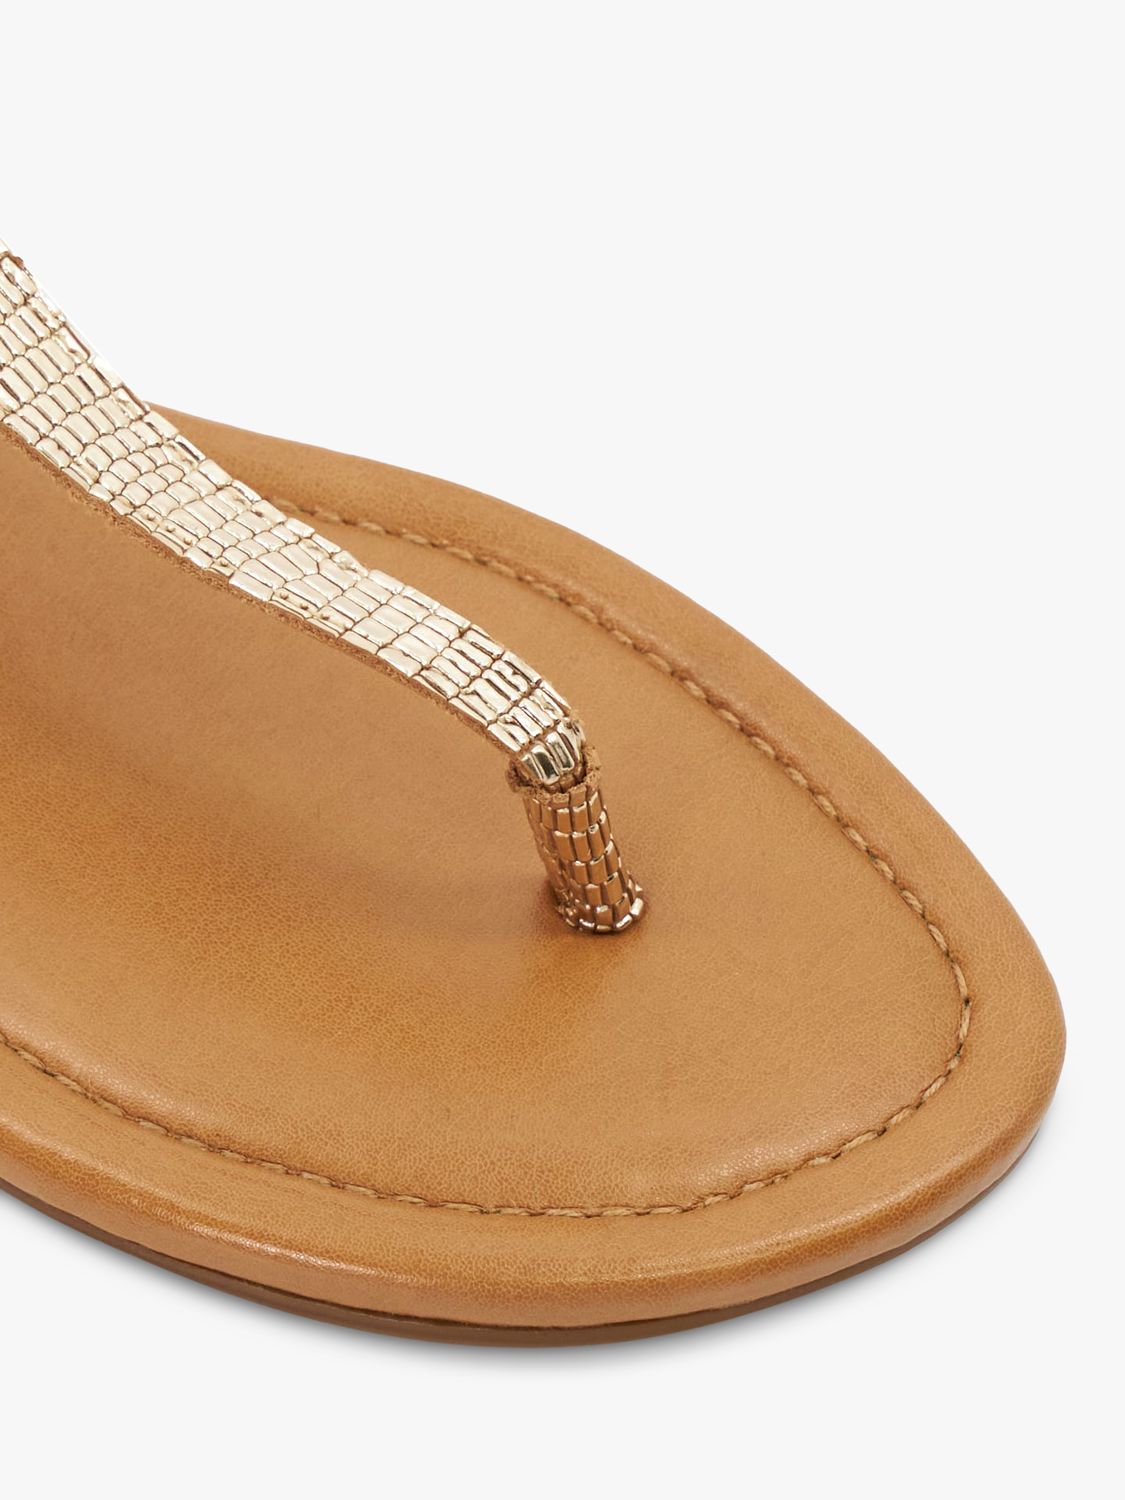 Dune Lari Leather Reptile Toe Post Sandals, Gold, 3